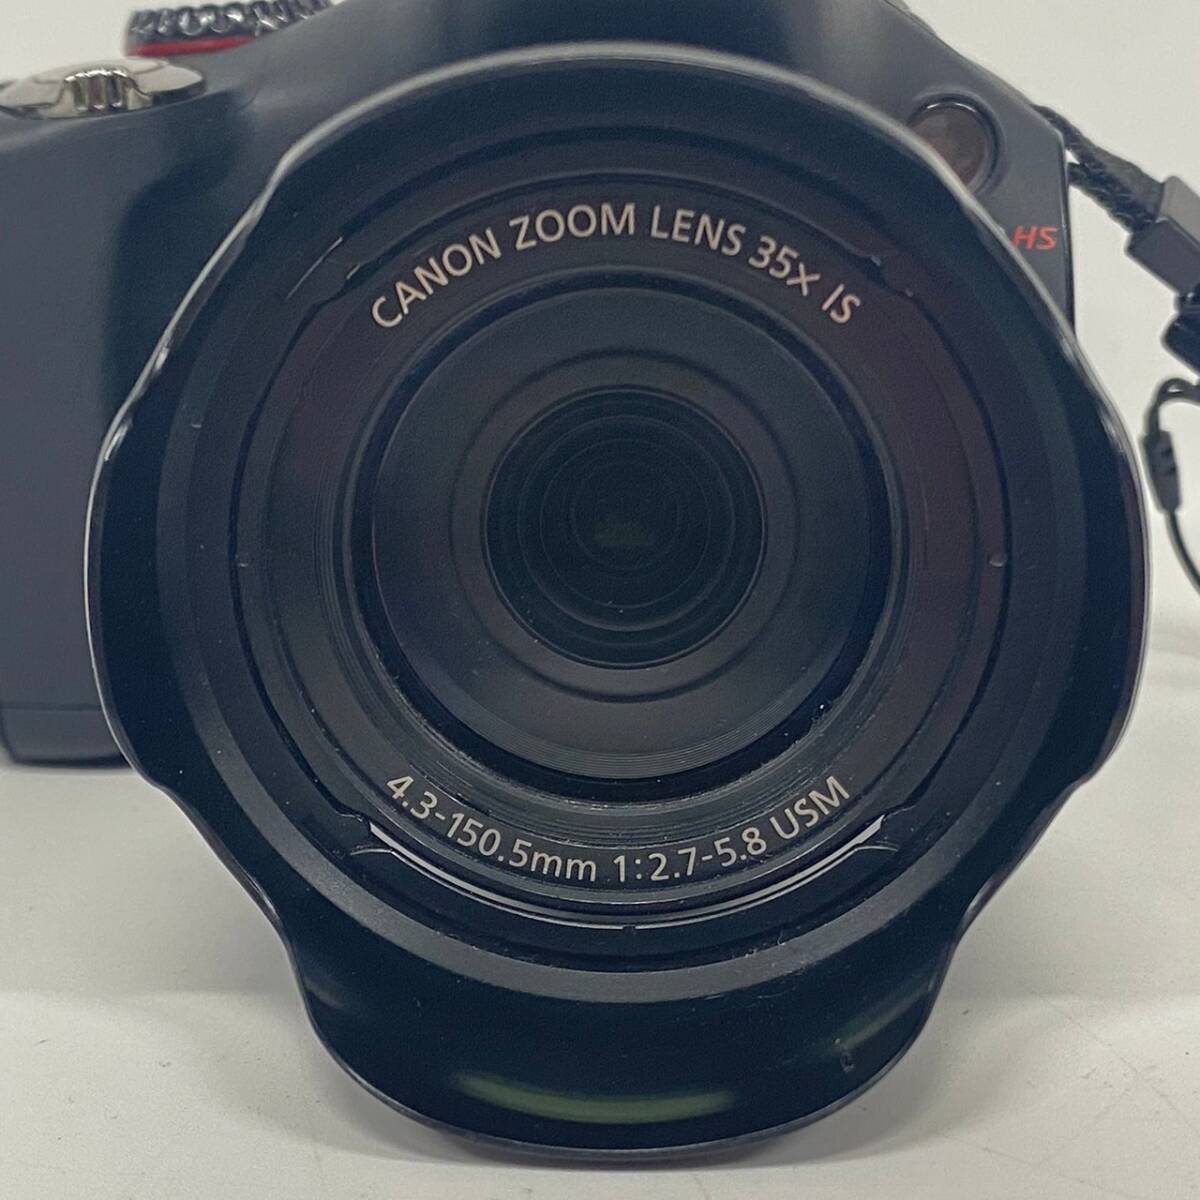 1円~【通電確認済み】キャノン Canon Power Shot SX40 HS CANON ZOOM LENS 35×IS 4.3-150.5mm 1:2.7-5.8 USM コンパクトデジタルカメラ _画像3